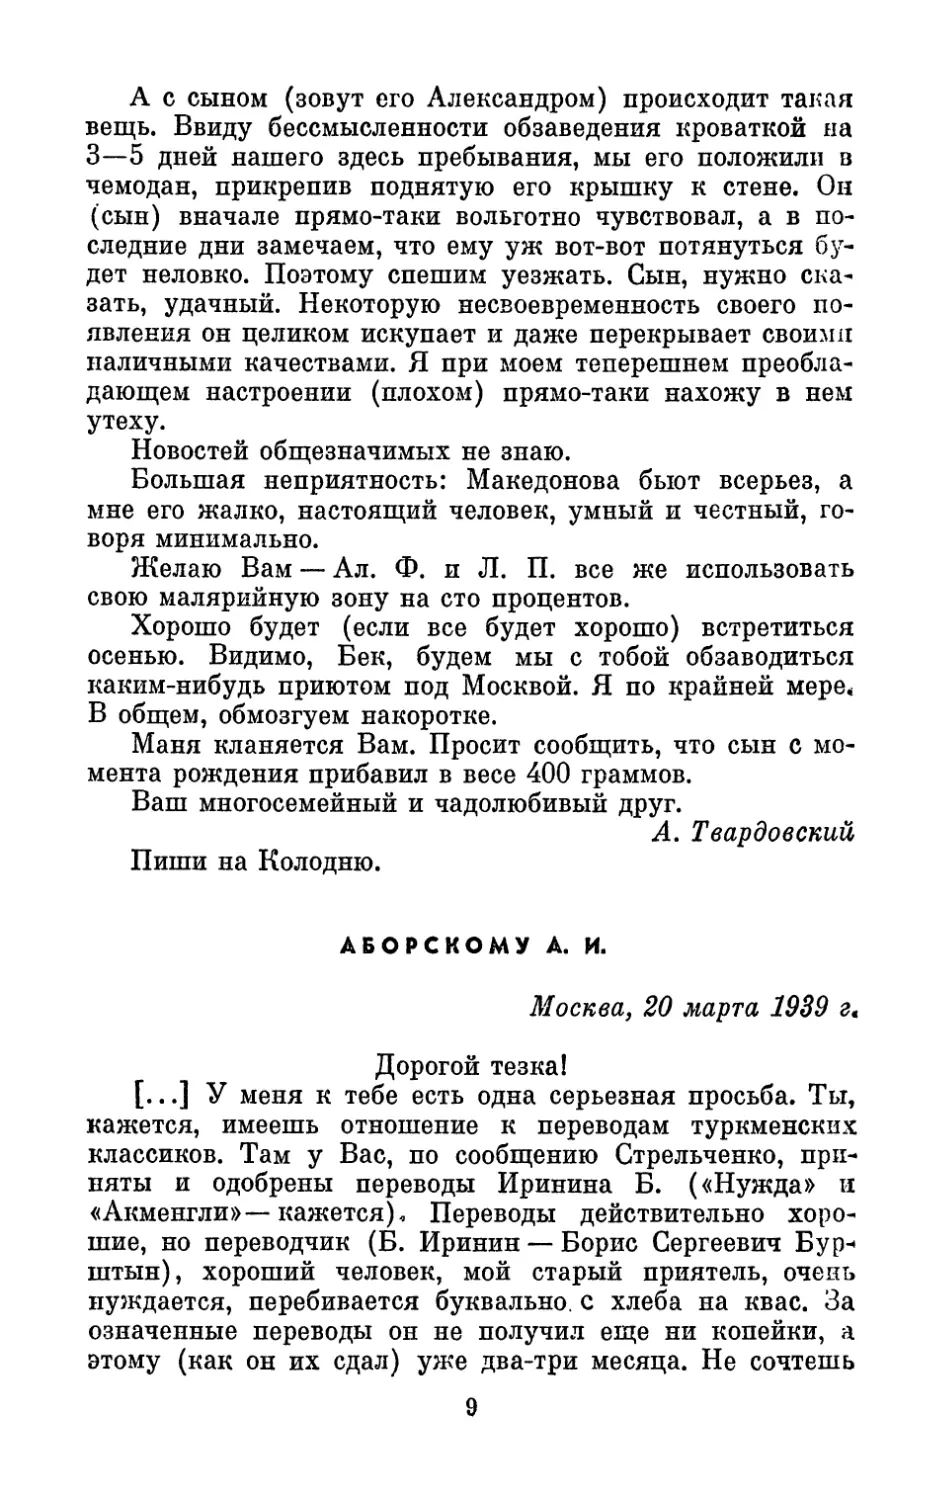 Аборскому А. И., 20 марта 1939 г.